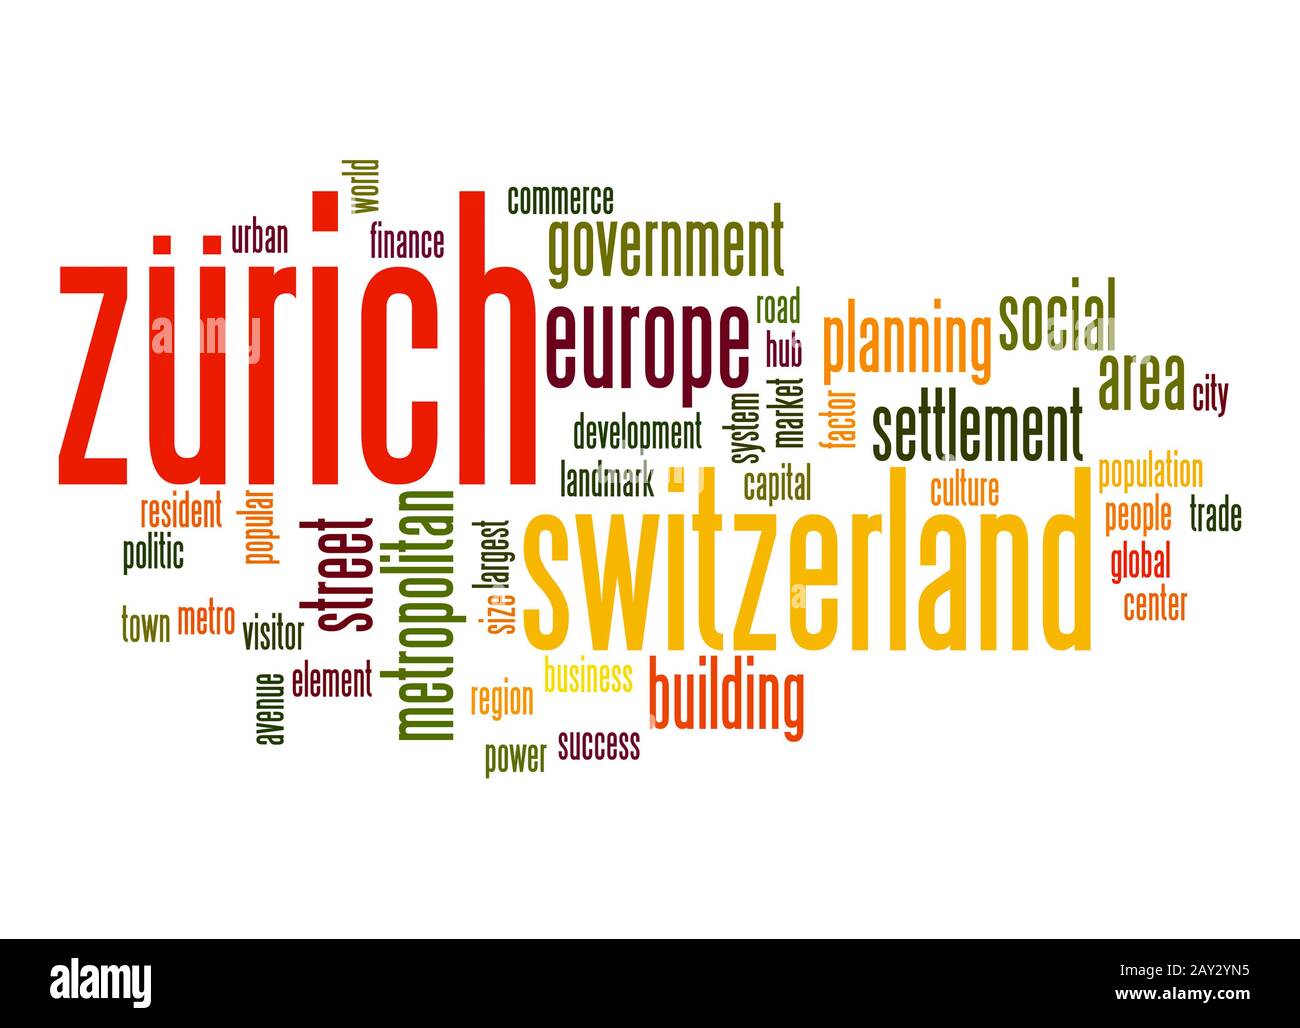 Zurich word cloud Stock Photo